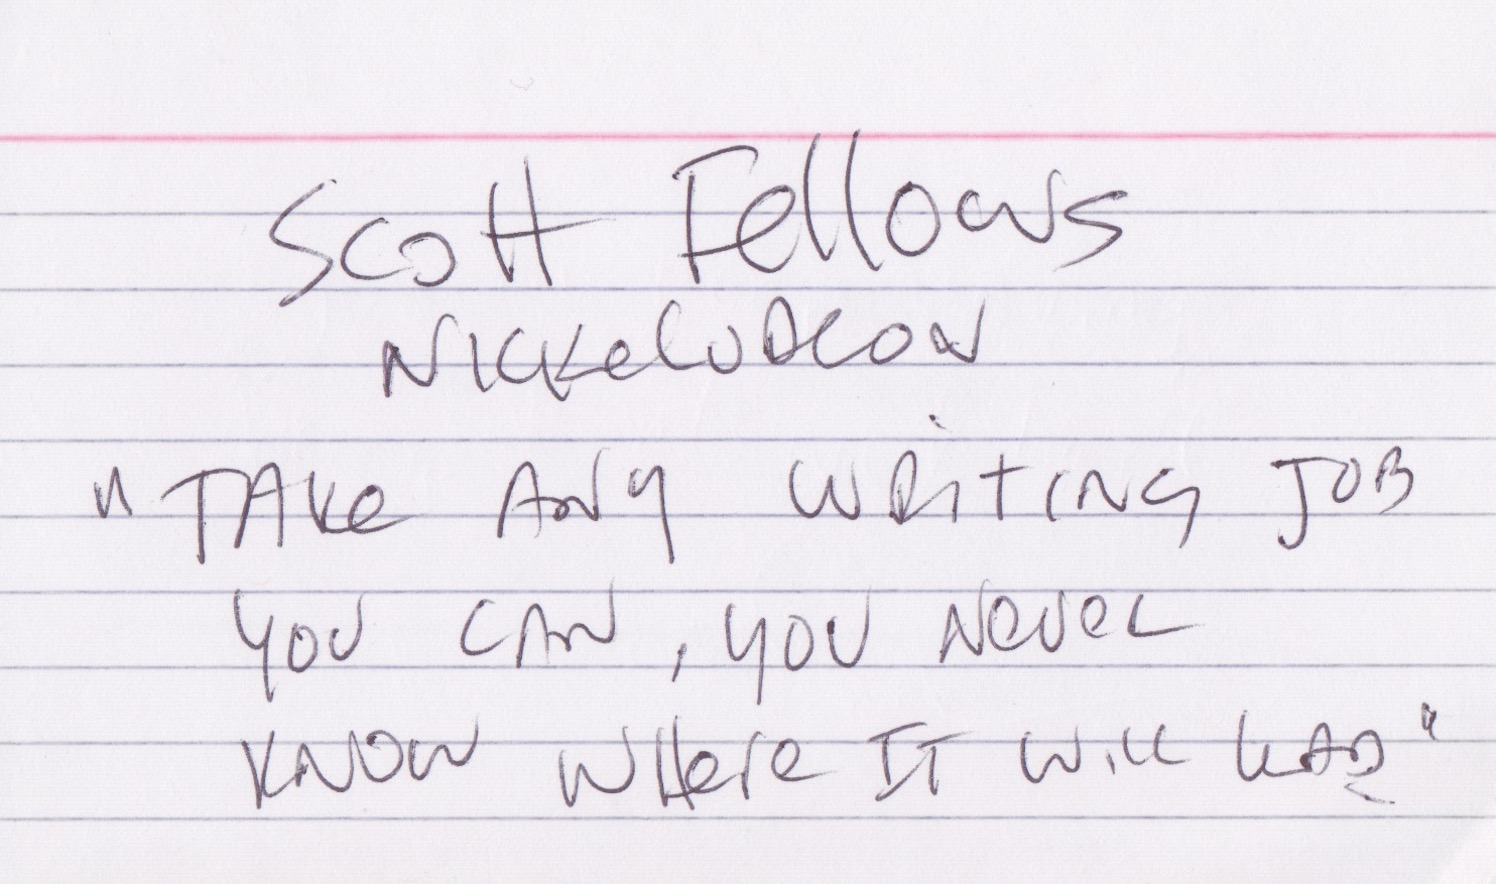 Scott Fellows